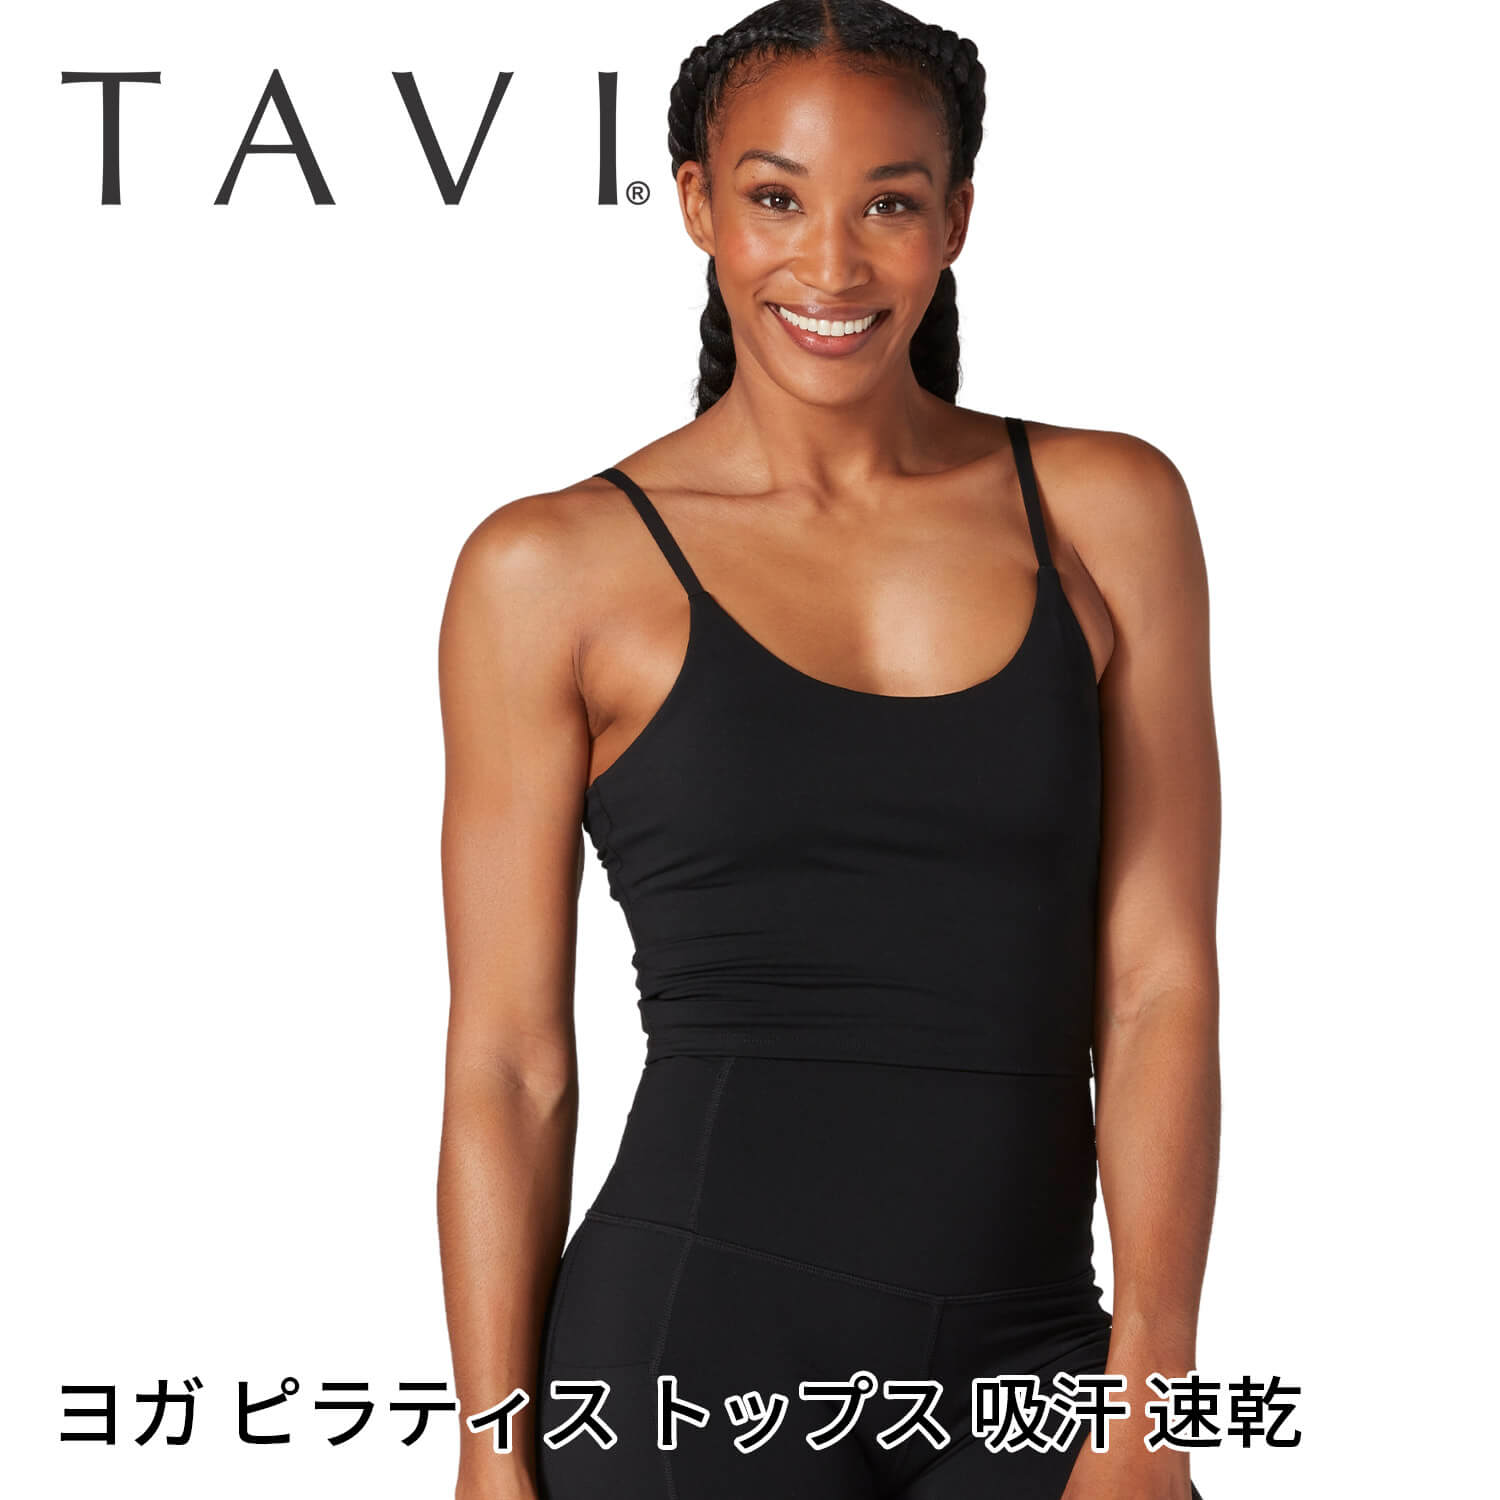 「メーカー 希望小売価格はメーカーサイトに基づいて掲載しています」 ■商品名：[TAVI] キャミブラ ■検索ワード：TAVI（タビ）の2024年春夏（24SS）新作ヨガウェア、「キャミブラ（Cami Bra）」は日本正規品、レディース（女性用）の通気性の優れたトップス（キャミソール、ブラトップ、ブラレット、インナー）です。クロップド丈で脚長効果があります。優れた吸汗速乾生地で汗をかいても快適な状態が続きます。カラーバリエーションは黒（ブラック）展開です。ヨガ、アウトドア、ワークアウト、フィットネス、ジム、トレーニングなどのスポーツにおすすめです。 ■サイズ： Sサイズ バスト87-91cm / ウエスト68-72cm Mサイズ バスト92-96cm / ウエスト73-79cm Lサイズ バスト97-104cm / ウエスト80-86cm ≫ 同じカテゴリーのアイテム ヨガ ヨガウェア フィットネス ピラティス キャミソール ≫ 類似おすすめブランド Manduka Loopa[TAVI] キャミブラ タビ レディース トップス ブラレット クロップド丈 カップ付 デザイン機能、ラグジュアリーとパフォーマンスが融合したクロップド丈キャミソール 調節可能なストラップと取り外し可能なパッド付きでフィット感をカスタマイズできるブラレット。クロップド丈で、脚長効果があり、スタイルをよく魅せてくれます。吸湿発汗性に優れた素材で、汗をかいても快適な着心地が続きます。ホットヨガにもおすすめです。 Tavi（タビ） TAVI（タビ）は、パフォーマンスとラグジュアリーを融合した米国のライフスタイルブランド。プレミアムなスポーツソックスや機能的なアパレルラインを展開。製品は職人技術による高いパフォーマンスとデザインの美しさが特徴的。ピラティス、ヨガ、その他のスタジオエクササイズからサイクリングやHIIT愛好家から幅広く支持されています。 エボニー定番のブラック。どんな色とも合う万能色。 商品特徴について 1枚でもレイヤードしてインナーとしても着用できます クロップド丈で脚長効果があります 最高の快適性と柔軟性を実現する4WAYストレッチ 吸湿発汗性に優れた引き締め効果のある着圧素材 スタッフコメント シンプルなデザインのクロップド丈キャミソール。カラーはブラックでクールな印象。どんなボトムスともコーデしやすく重宝します。サステイナブルな素材を使用し、汗をかいても快適な着心地が続く通気性をお楽しみください。 製品製造の段階で、地球への悪い影響を軽減するよう、努力し実践しています。製品の耐久性にこだわり、使い捨てにならないよう、利益を得ることよりも品質に投資し、消費者がより少ないコストでより良いものを買うことができるように努めています。モダール素材やオーガニックコットンの選択、プリント技術に至るまで、私たちはよりサスティナブルな素材や技術を積極的に選んでいます。 【素材】ナイロン75%、25%スパンデックス ・同系色と一緒に洗濯機で洗えます。 ・陰干しが最適です。 ・乾燥機は弱火で。 ・柔軟剤、漂白剤、アイロンは使用しないでください。 ※代金引換の場合はメール便配送不可です。 ※予約や取り寄せ商品は、即日配送ができない場合がございます。